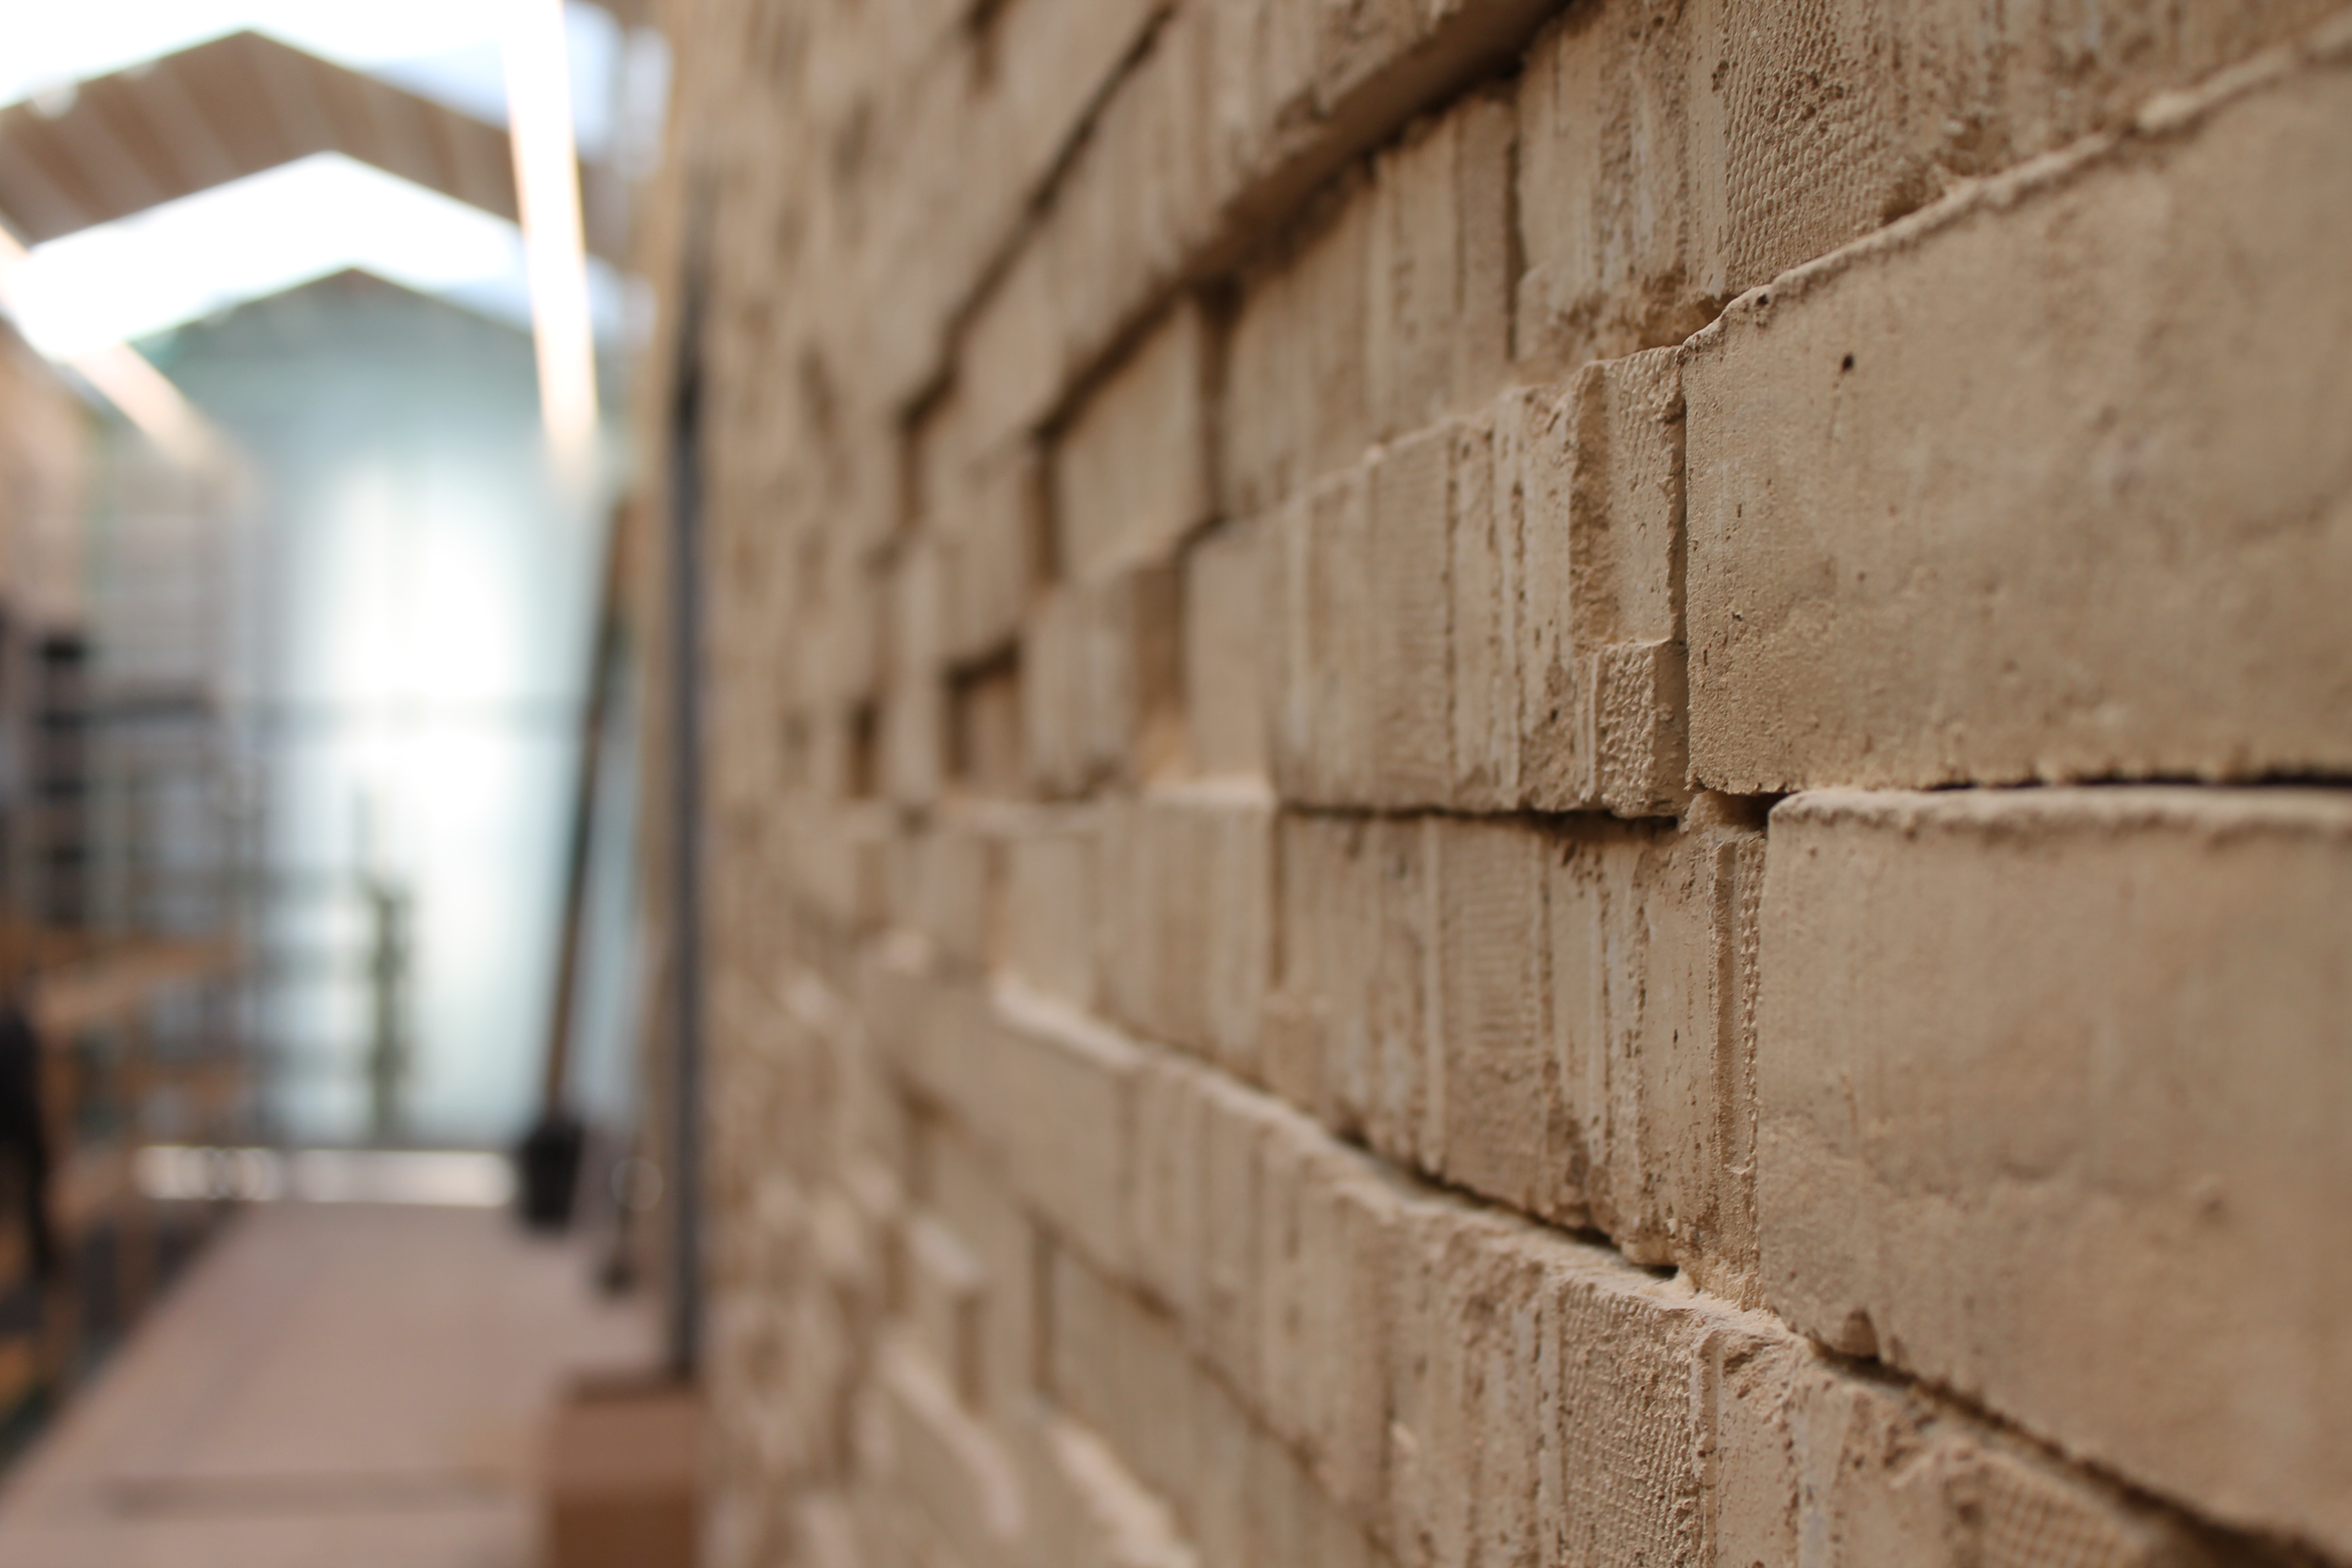 Kaosmuren af gule, rå mursten fungerer både som akustisk dæmper og symbol for samvær med plads til både fællesskab og individualitet. Foto: Askov Højskole